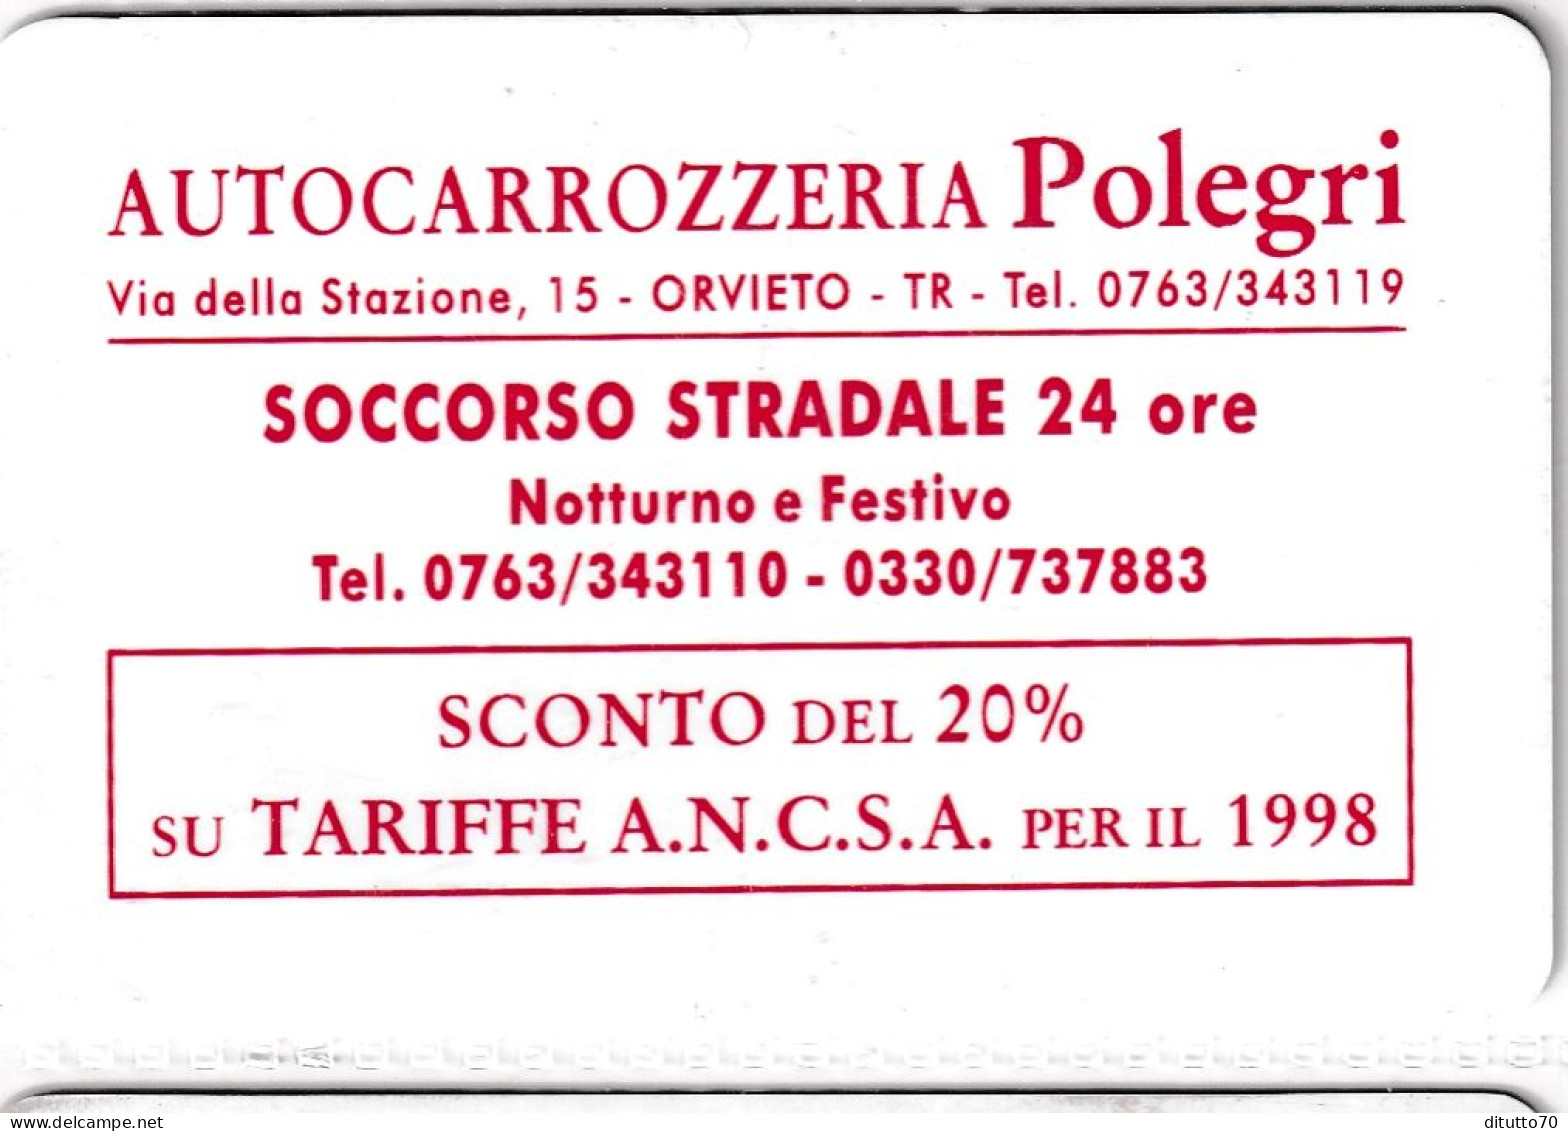 Calendarietto - Autocarrozzeria Polegri - Orvieto - Anno 1997 - Small : 1991-00